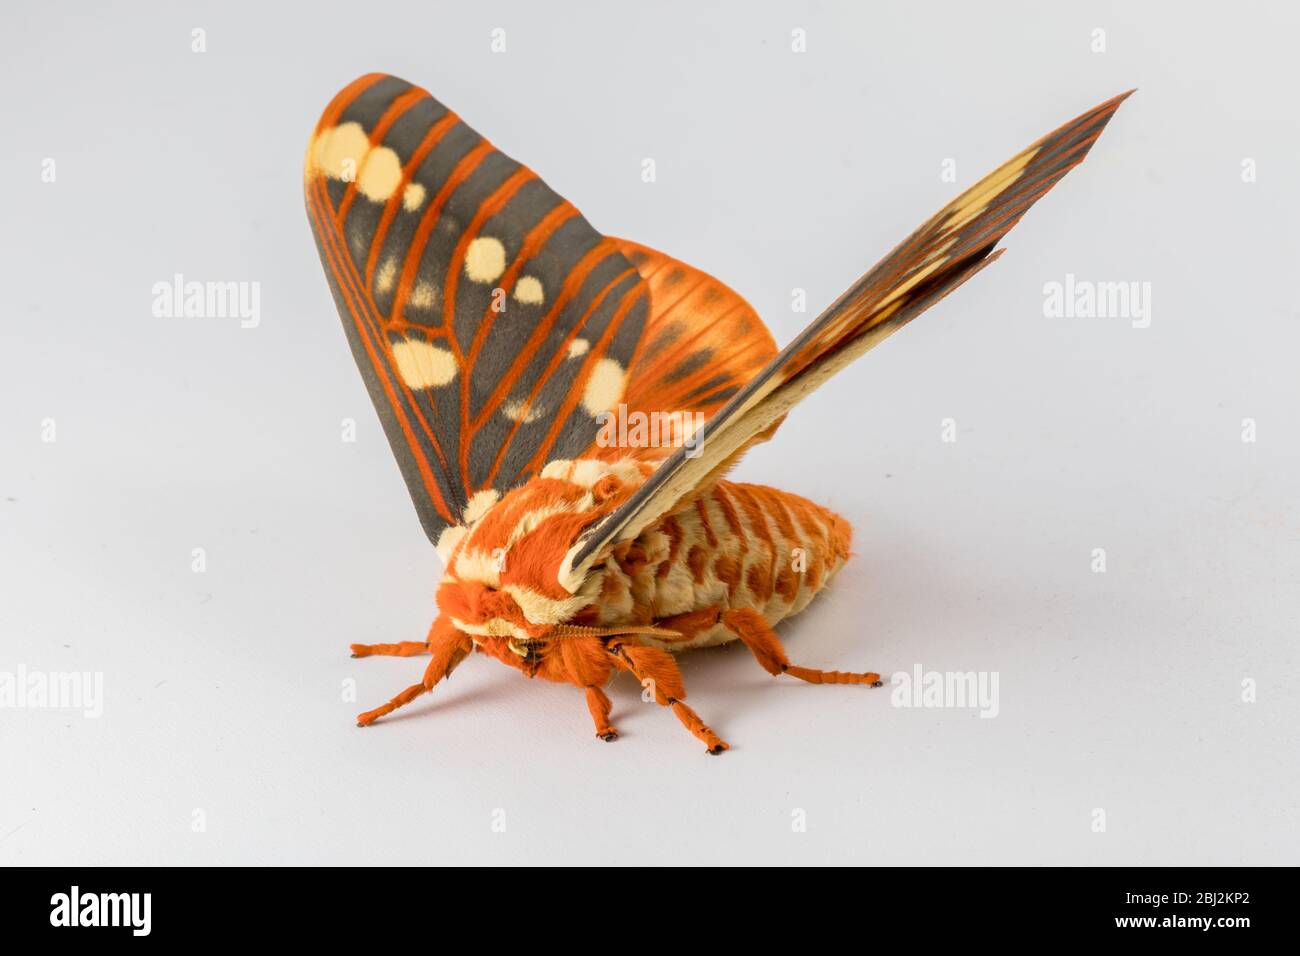 Regal Moth, Citheronia regalis, on a White Background Stock Photo